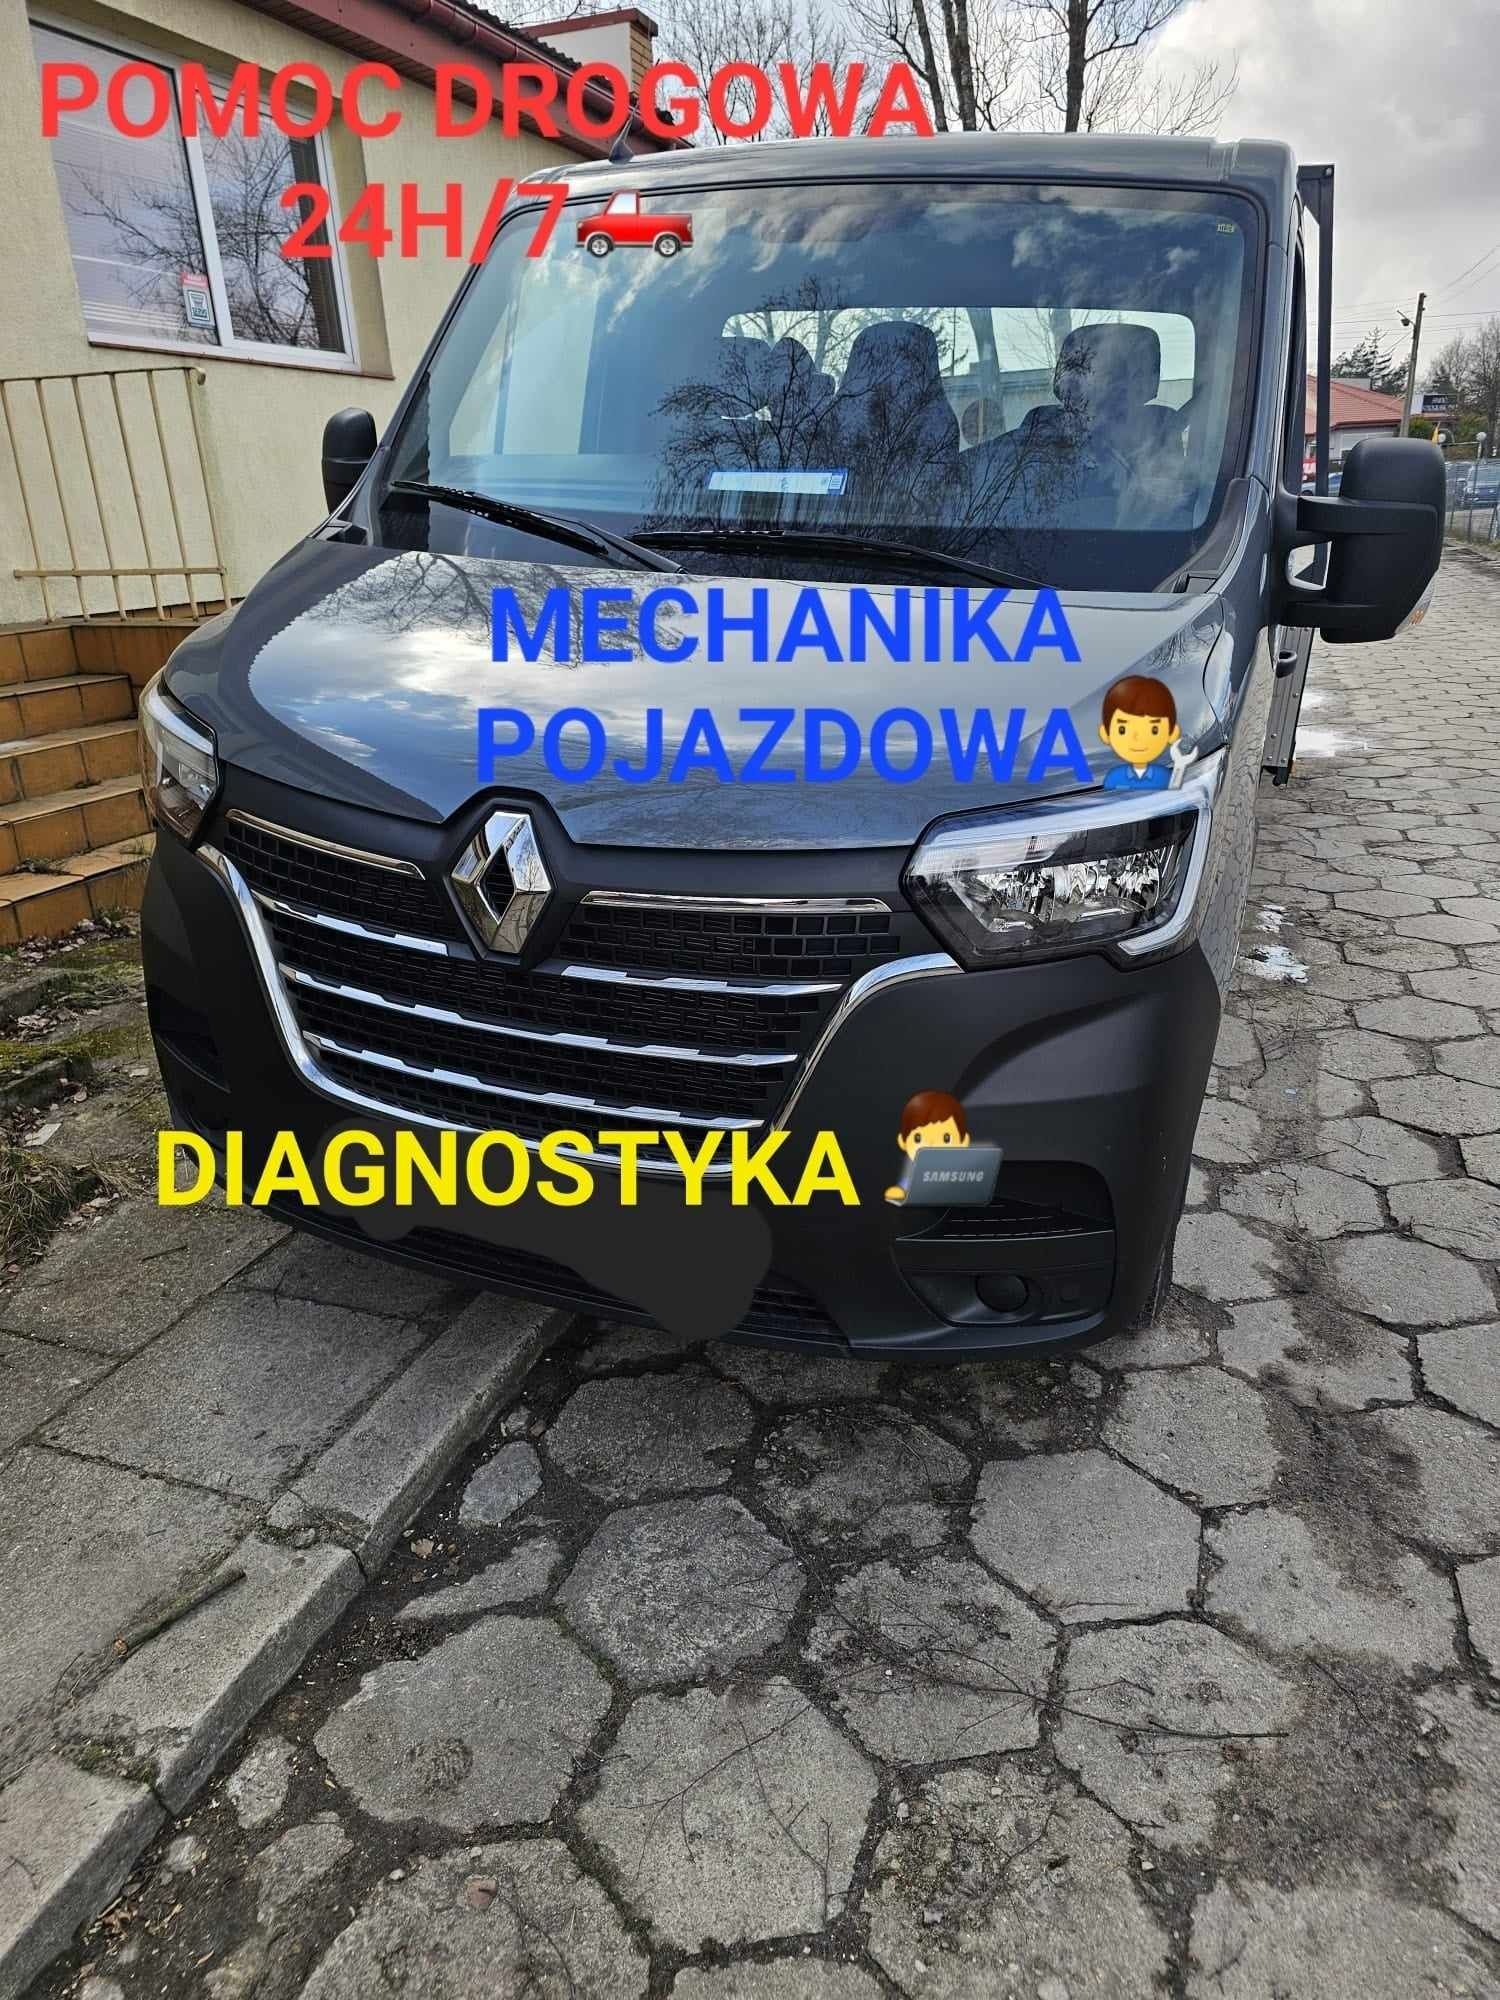 Mechanika pojazdowa pomoc drogowa 24h/7 diagnostyka